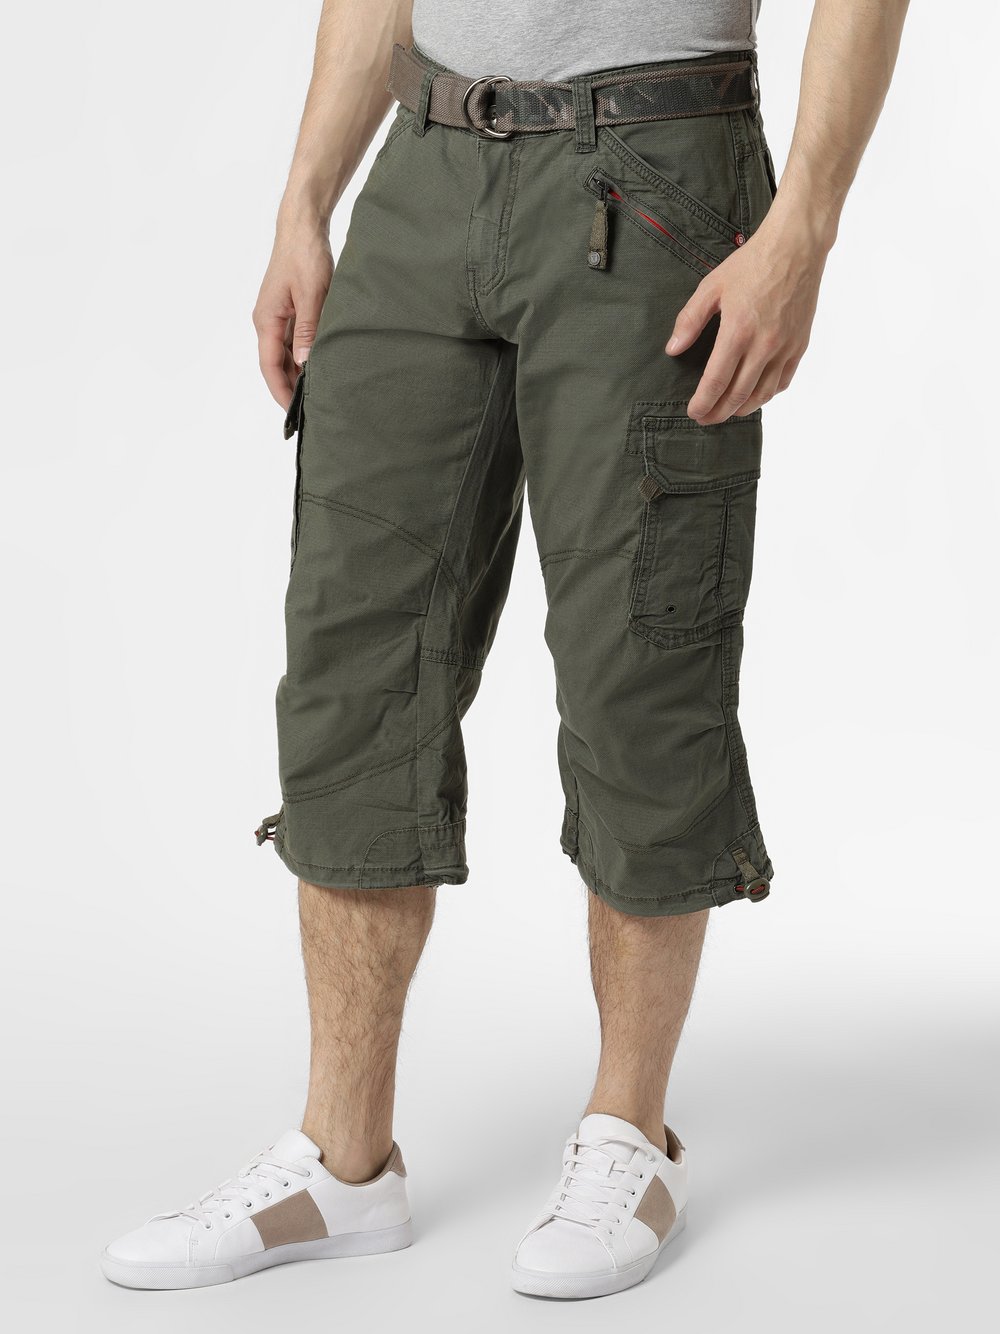 Timezone - Spodnie męskie – Loose MilesTZ, zielony